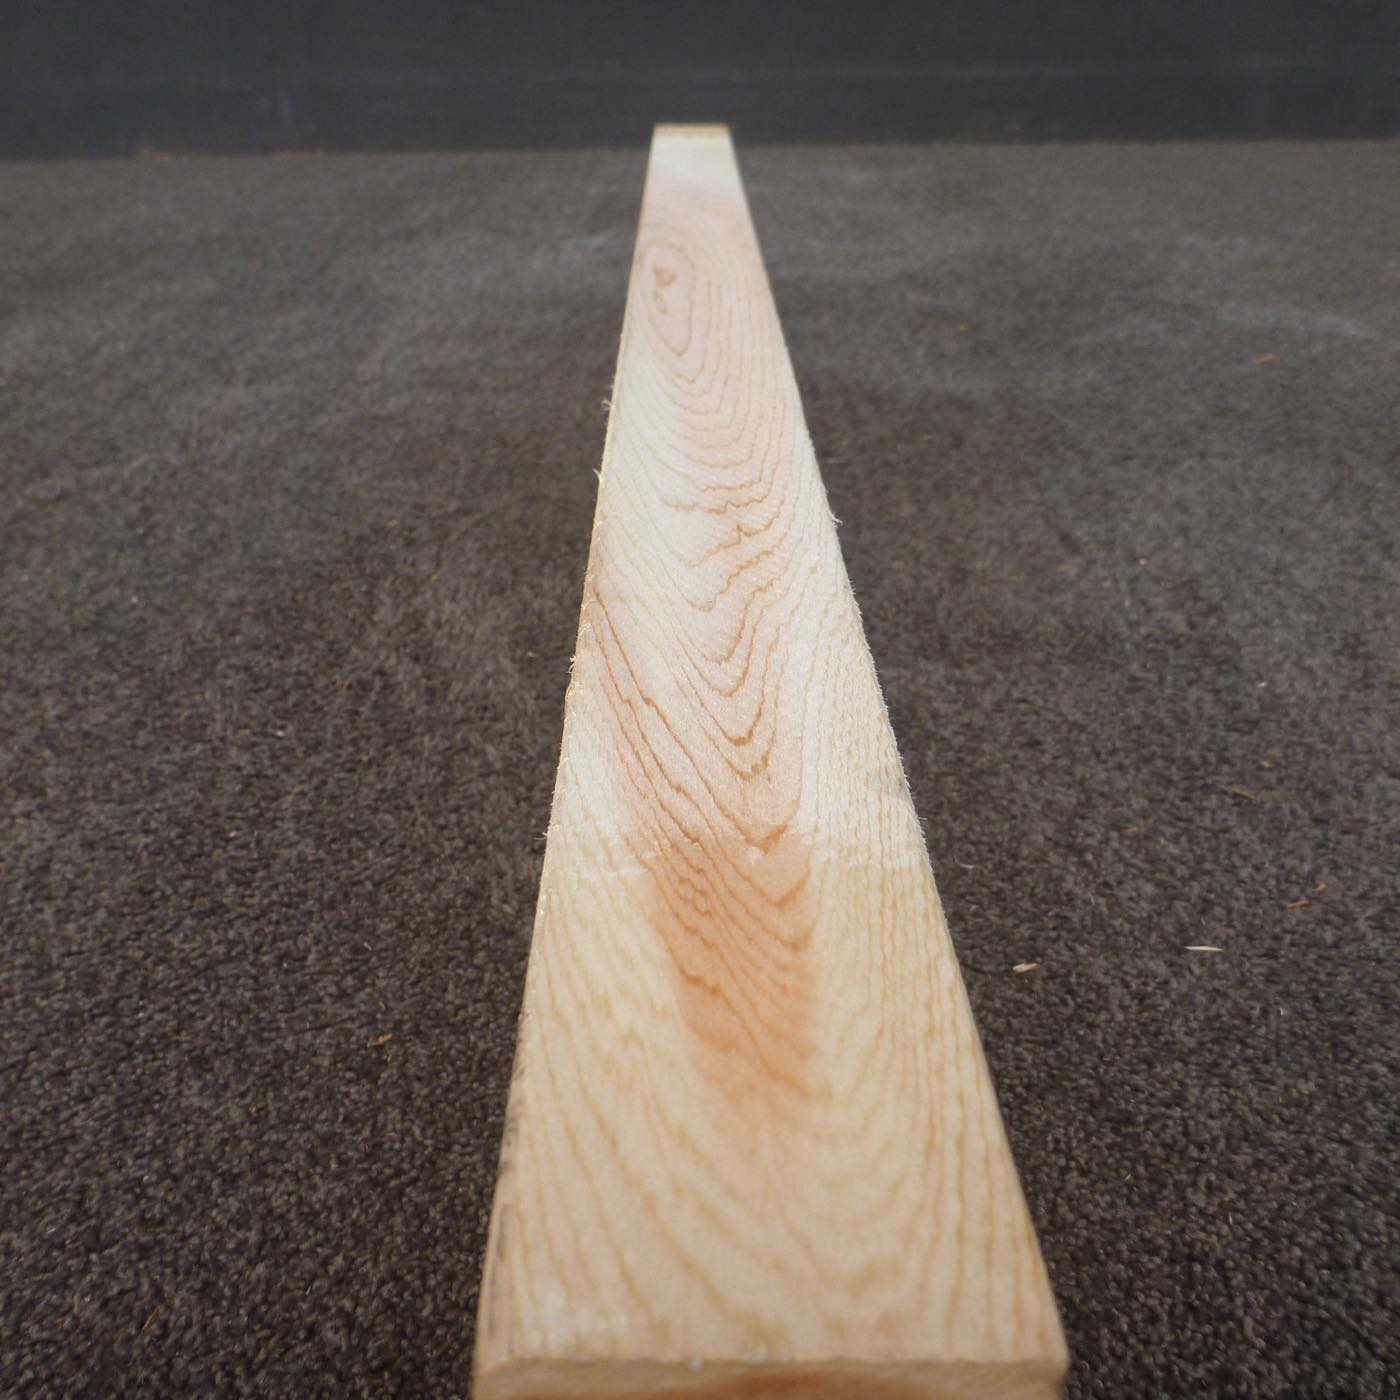 彫刻材 天然木曽檜 柾目板 ラフ材 L1000×T45×W135mm TKIQ-59